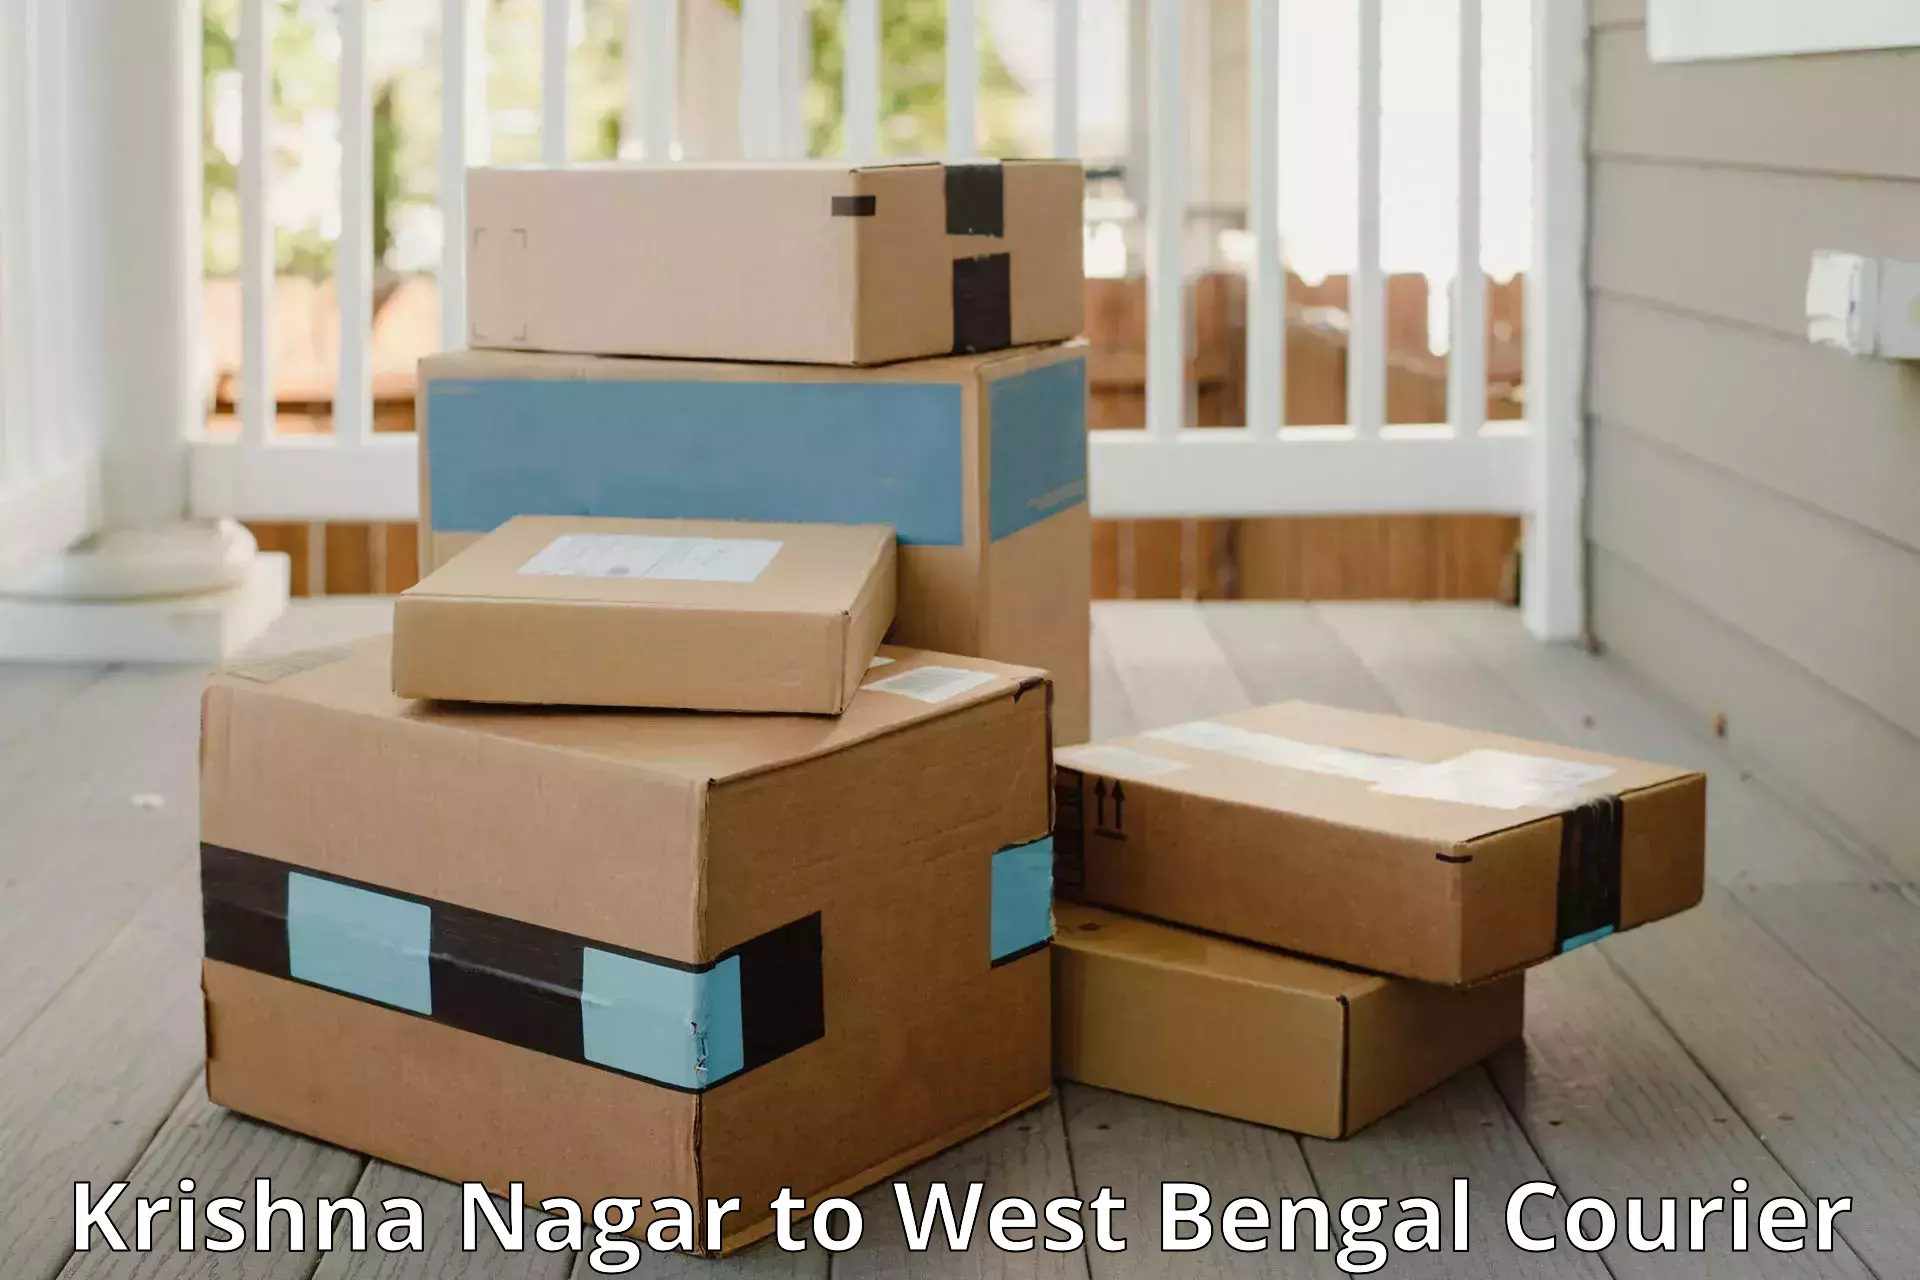 Luggage transport consulting Krishna Nagar to Hura